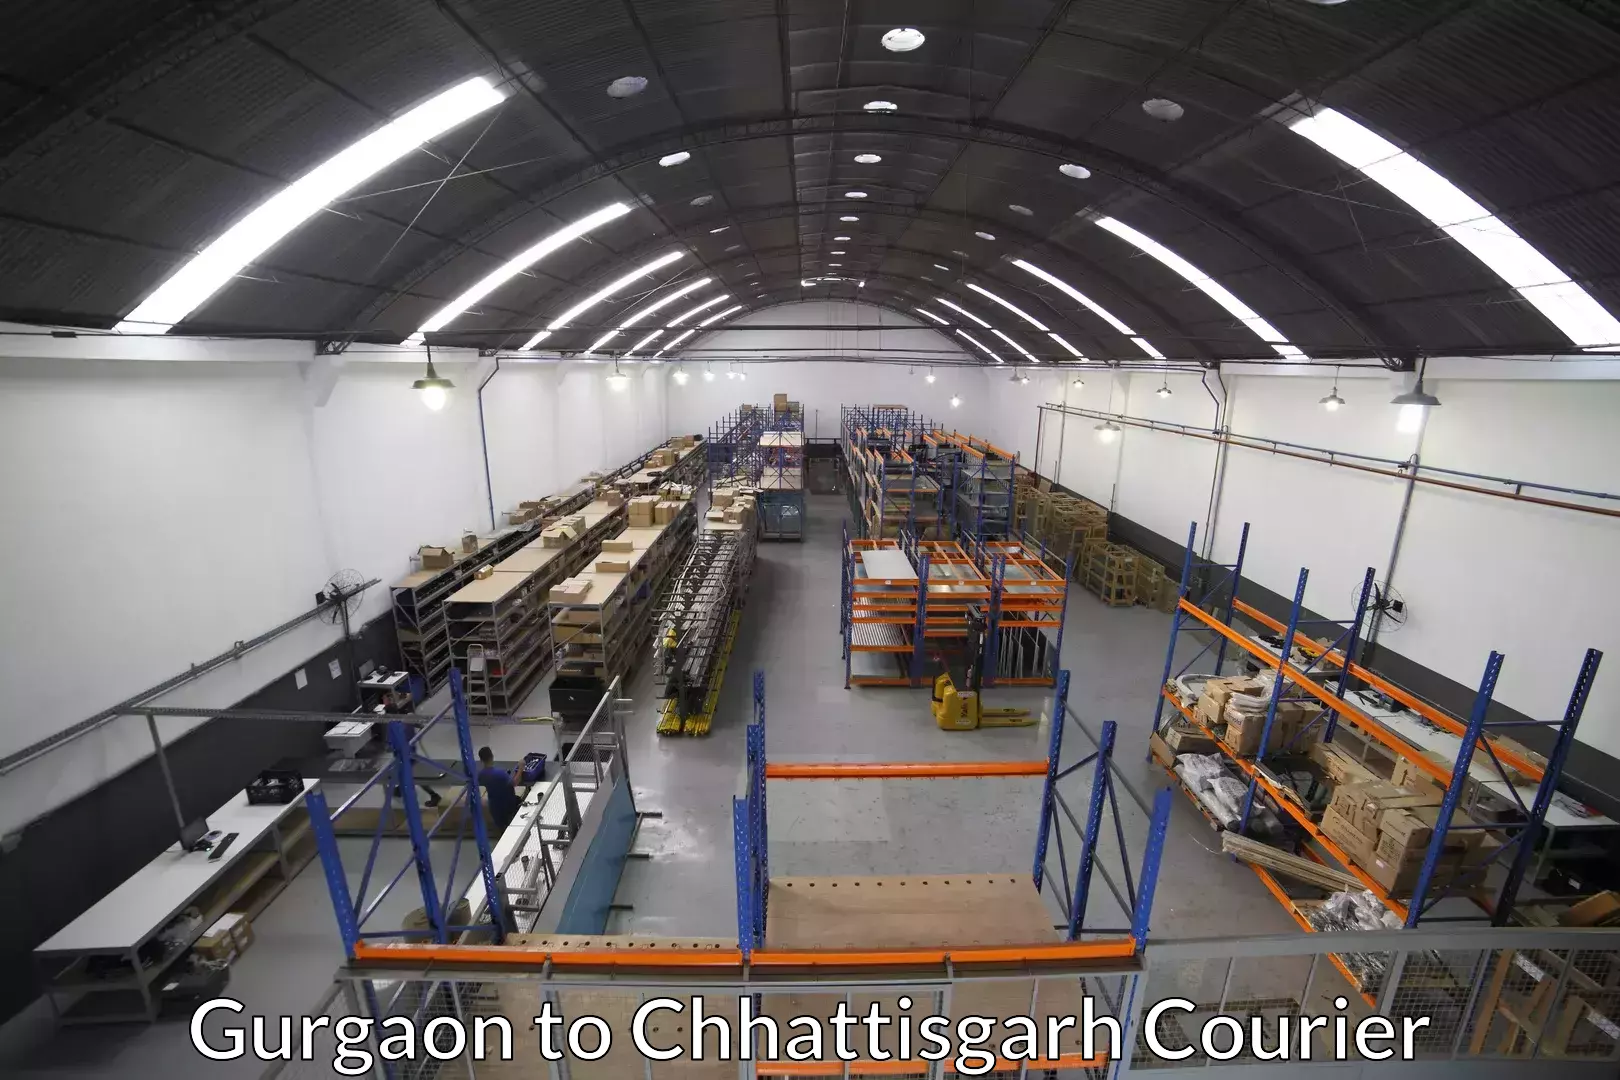 Furniture relocation services Gurgaon to Patna Chhattisgarh